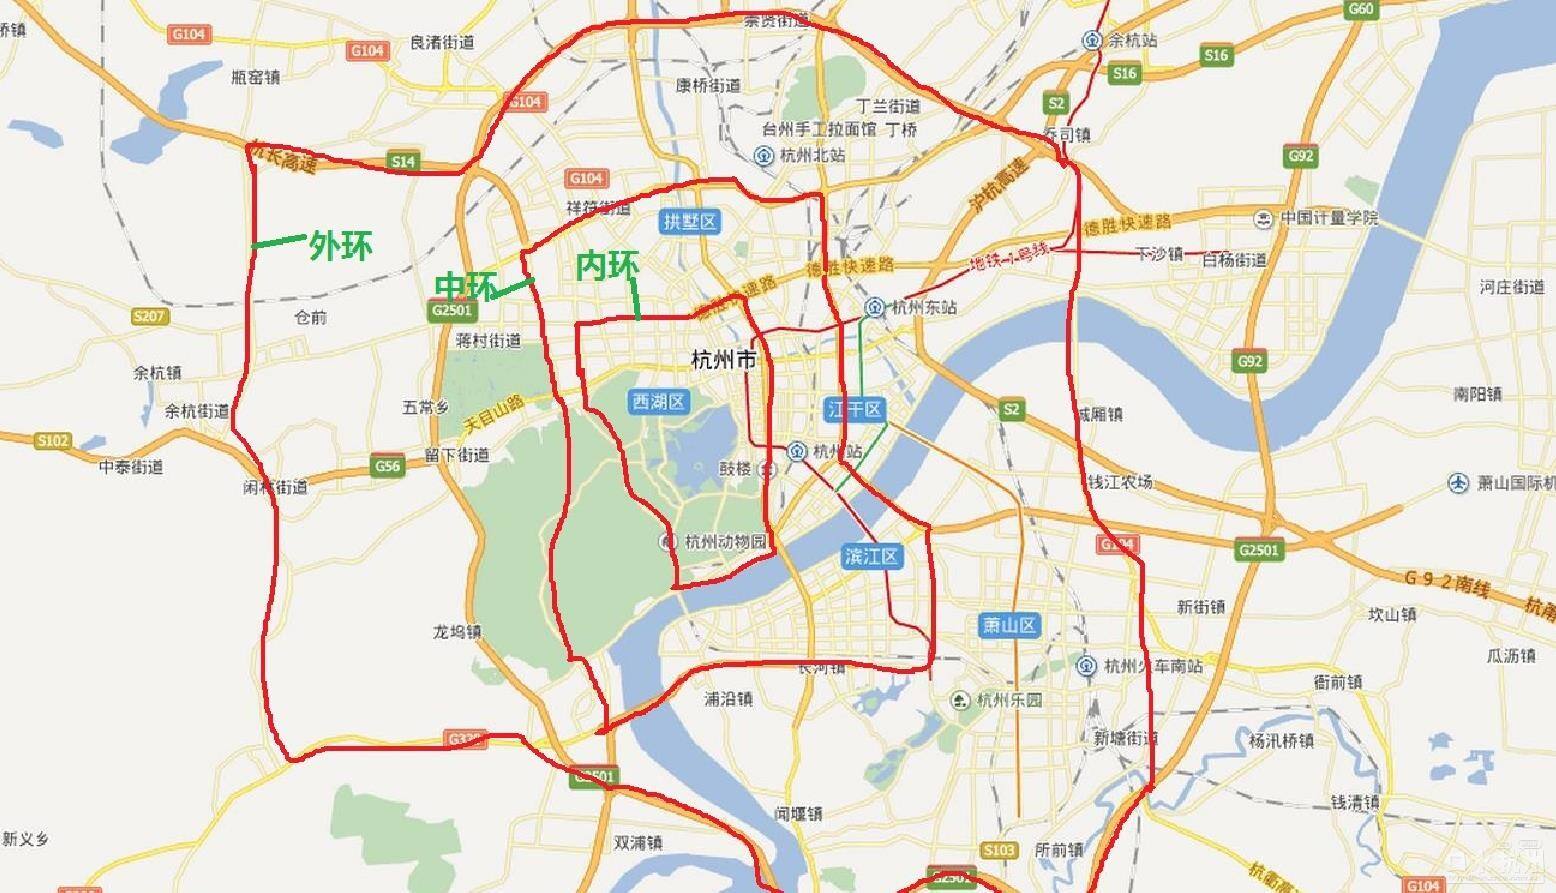 以西湖为核心的杭州三环大部分是高架隧道快速路滨江进中环萧山进不了